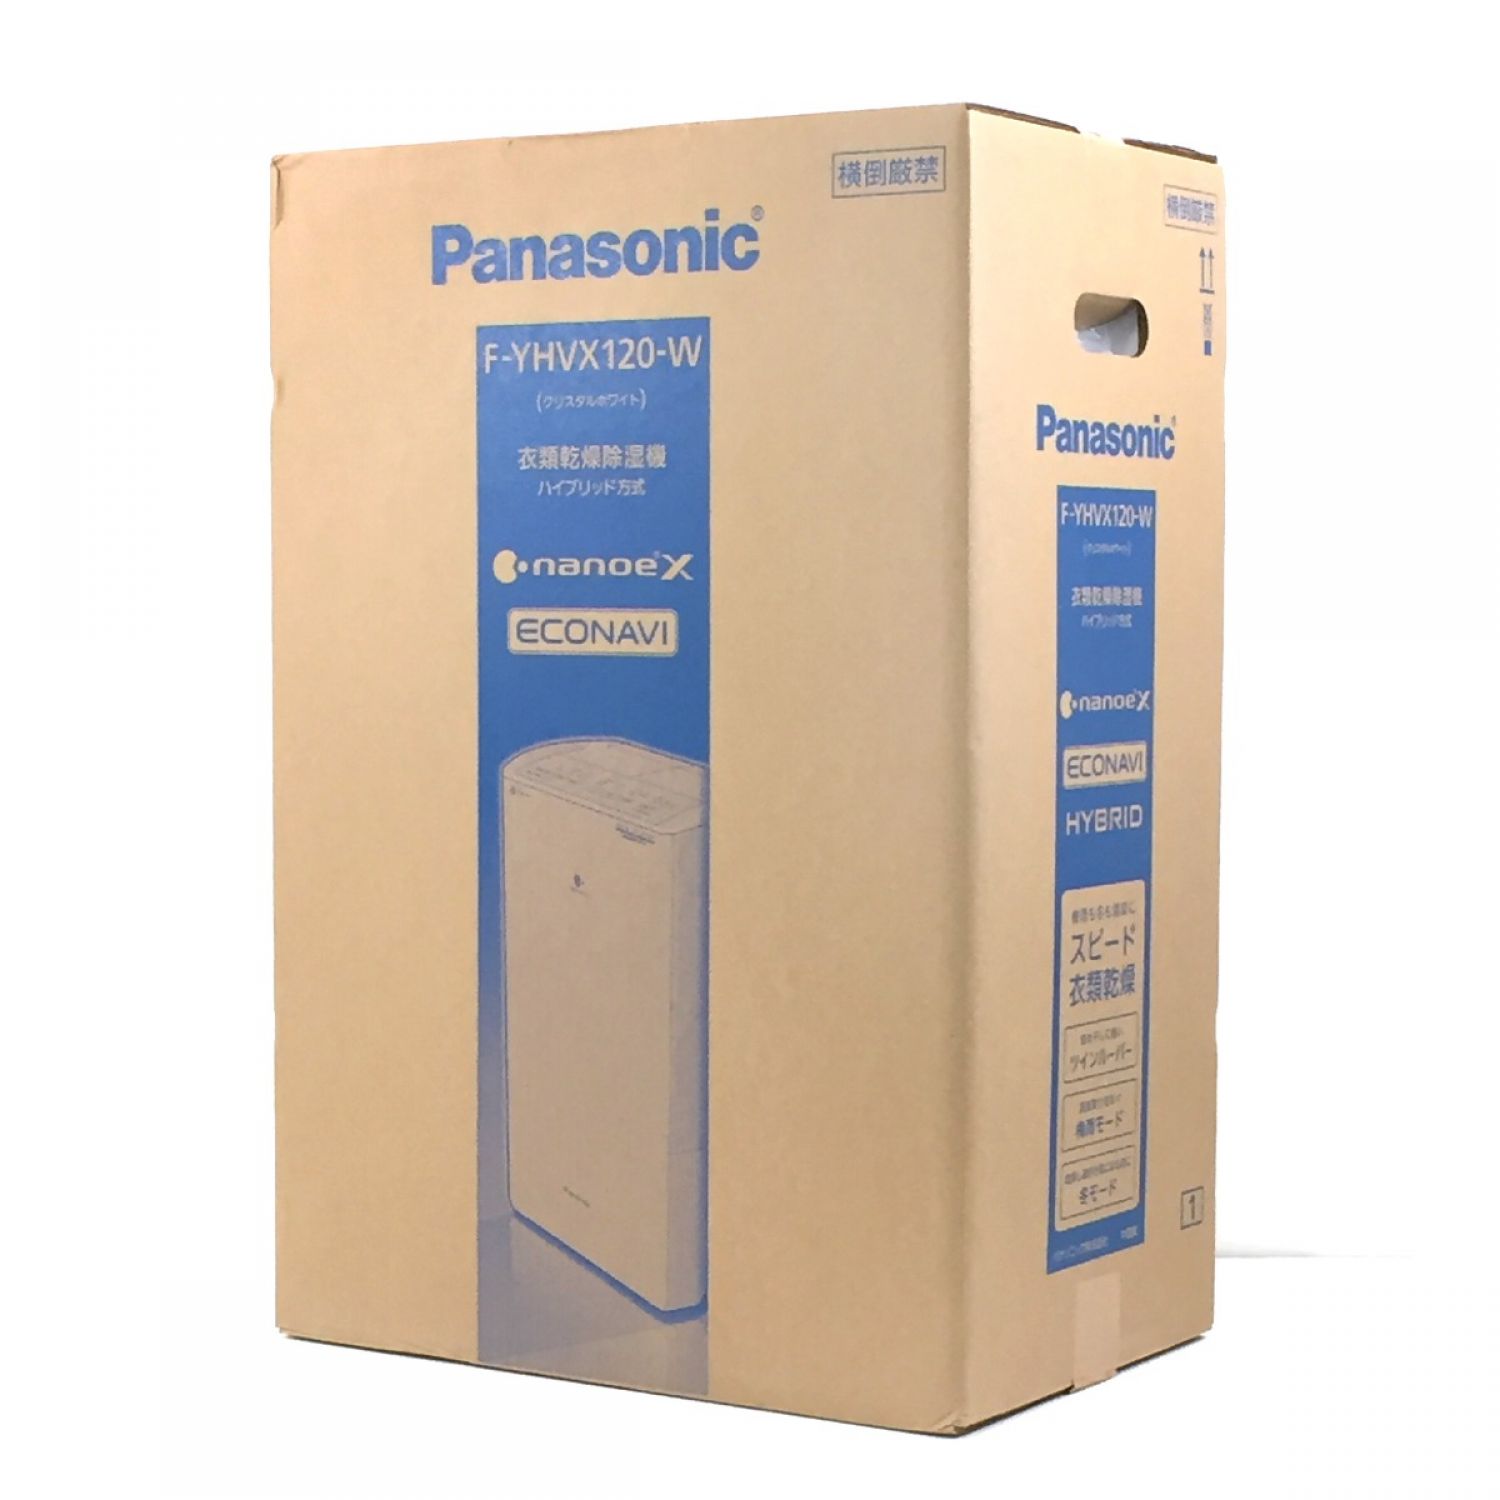 中古】 Panasonic パナソニック 衣類乾燥除湿機 HYBRID&ECONAVI&nanoeX 